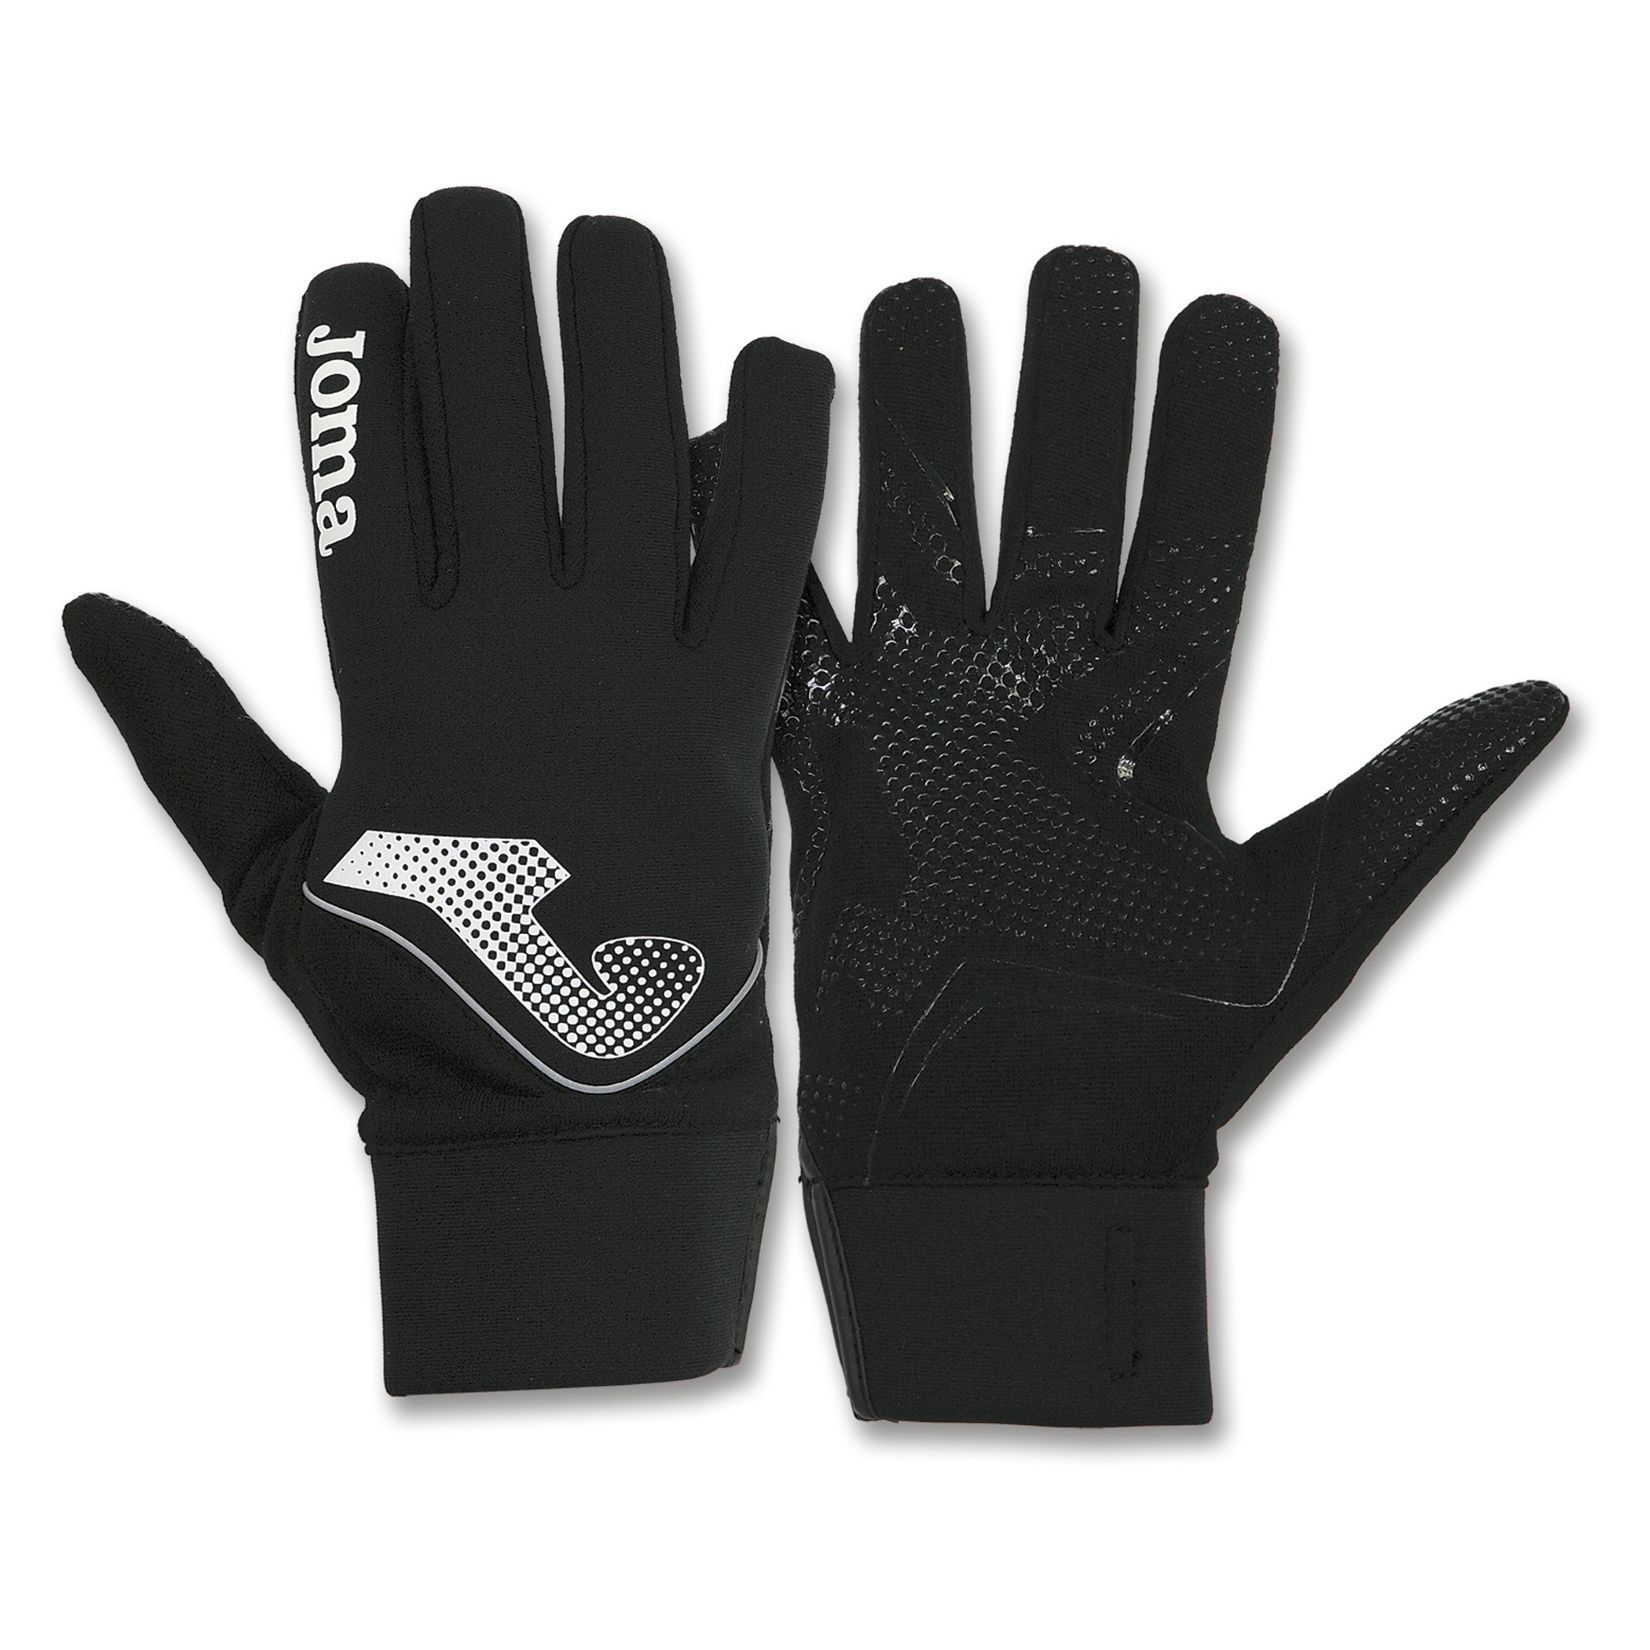 Joma Football Gloves - Kitlocker.com